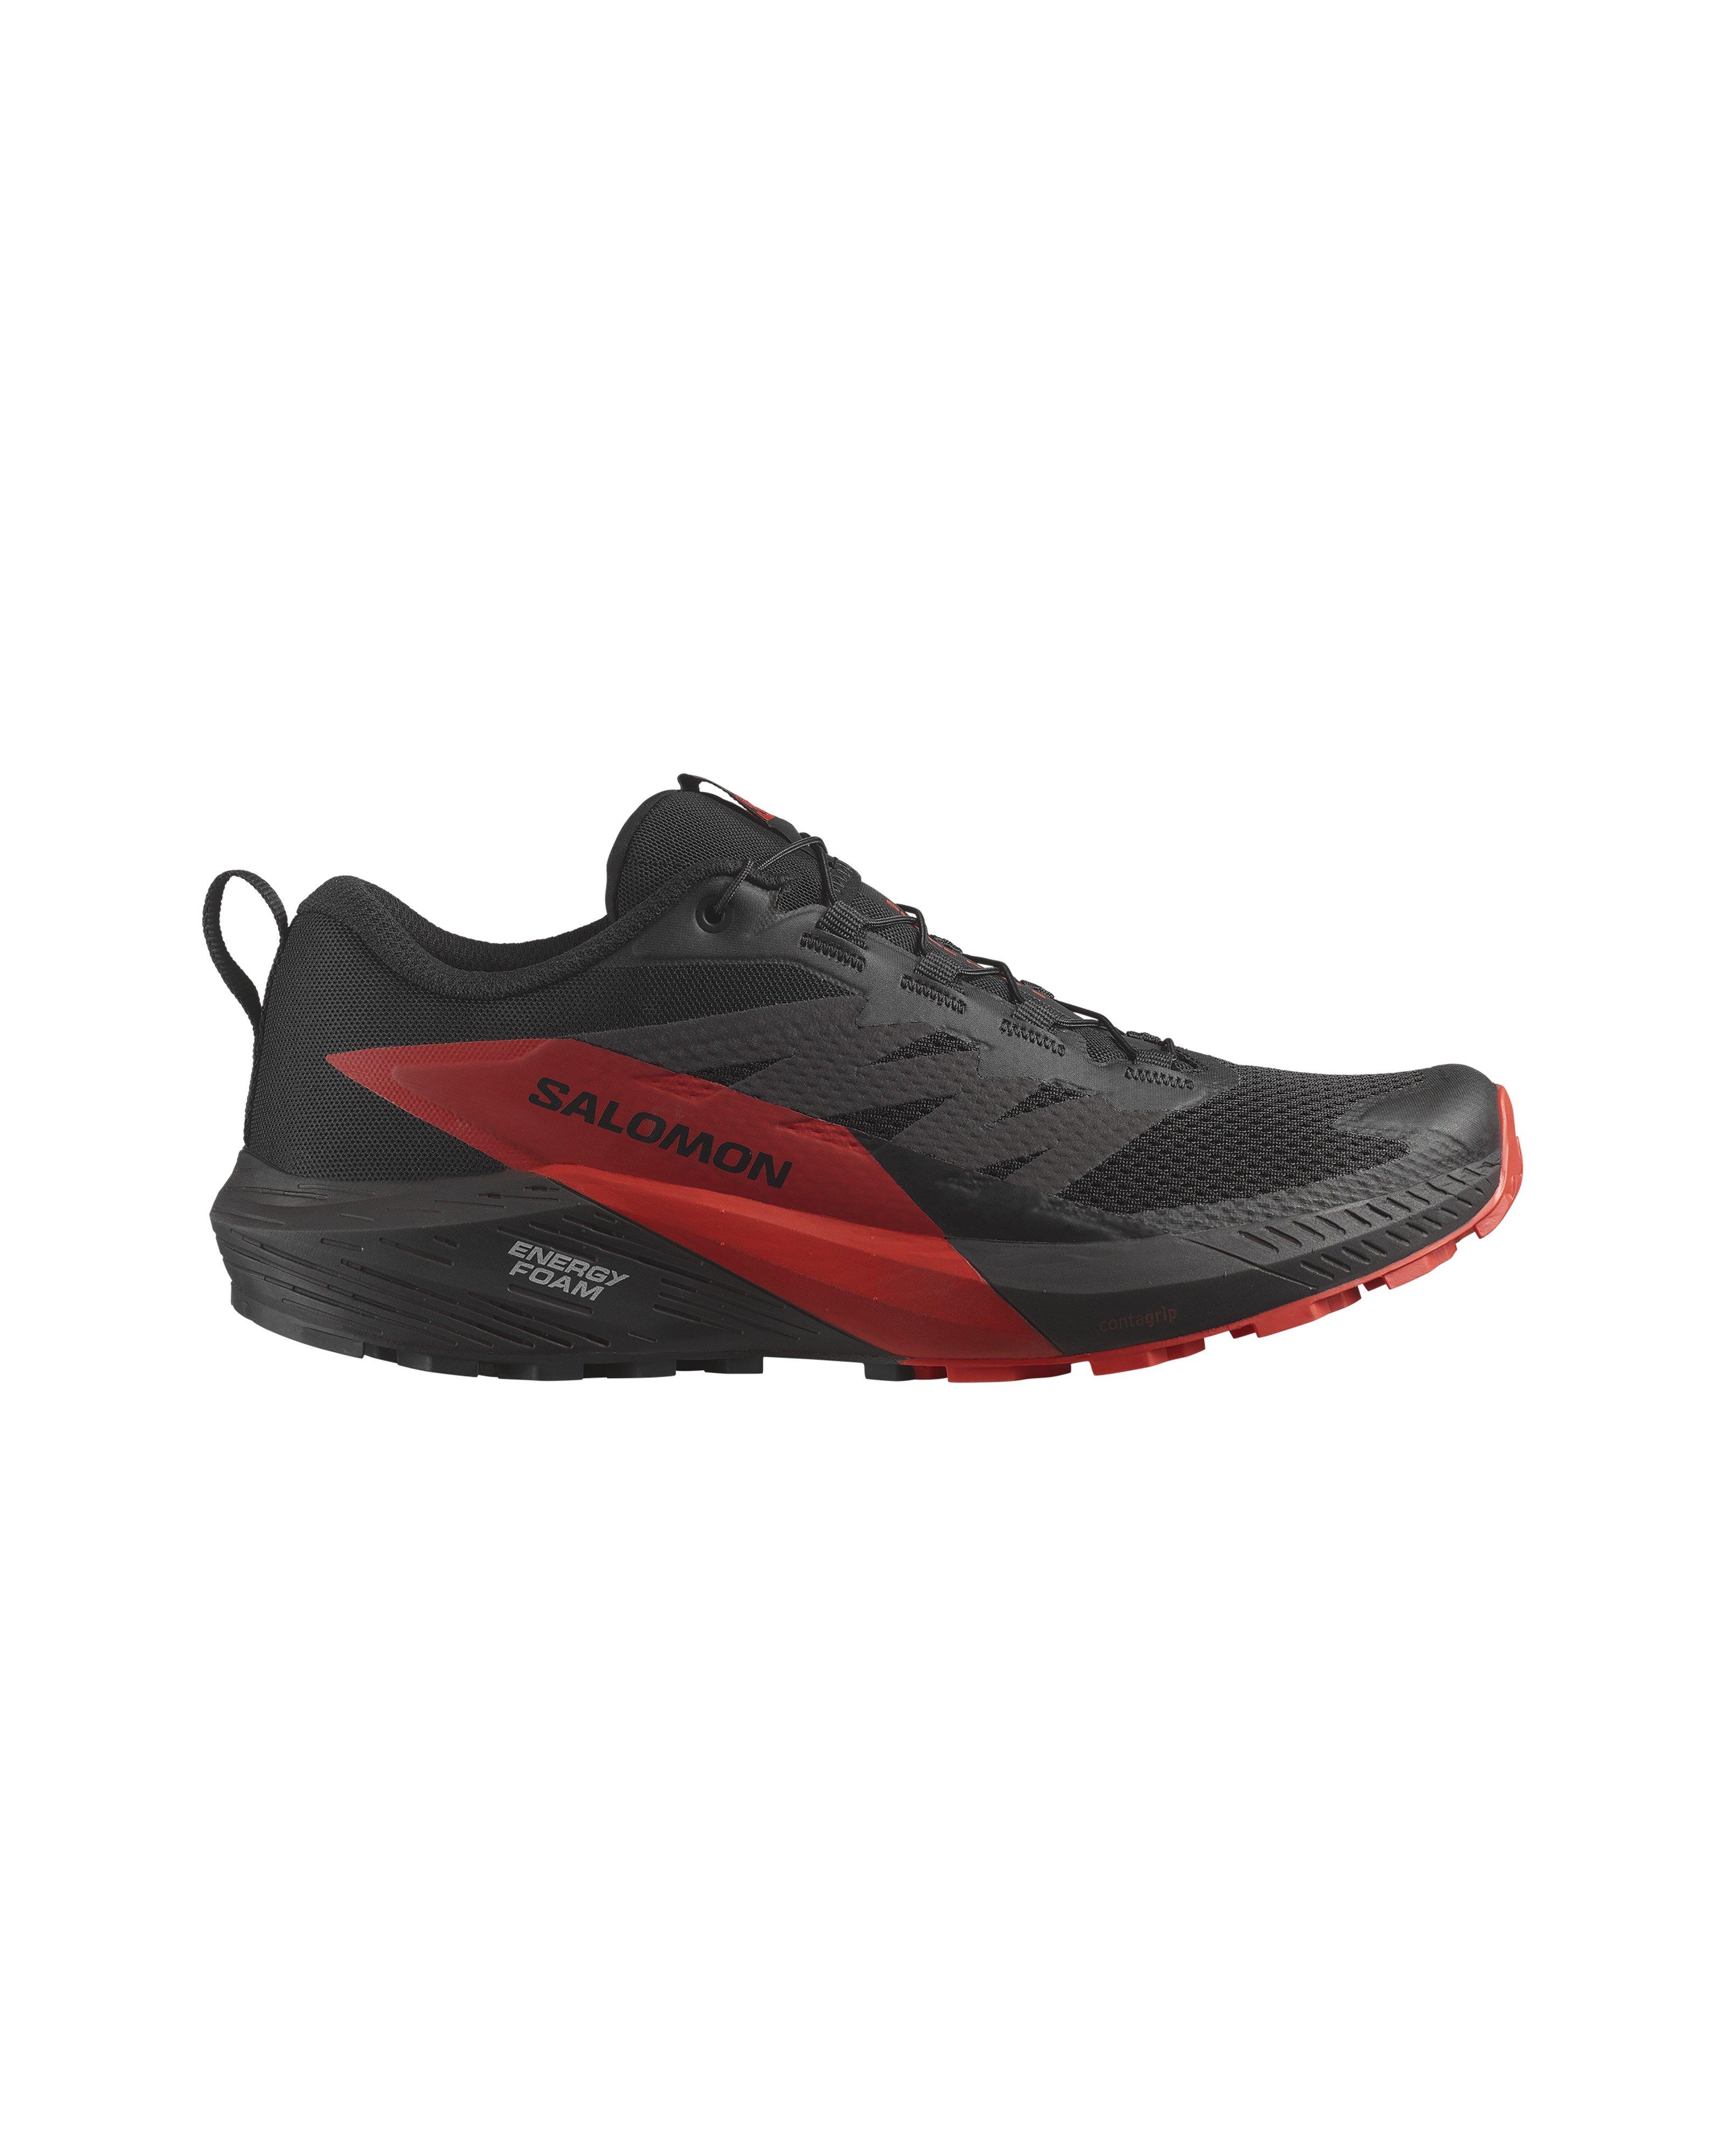 Salomon Men's Sense Ride 5 Trail Running Shoes | Cape Union Mart